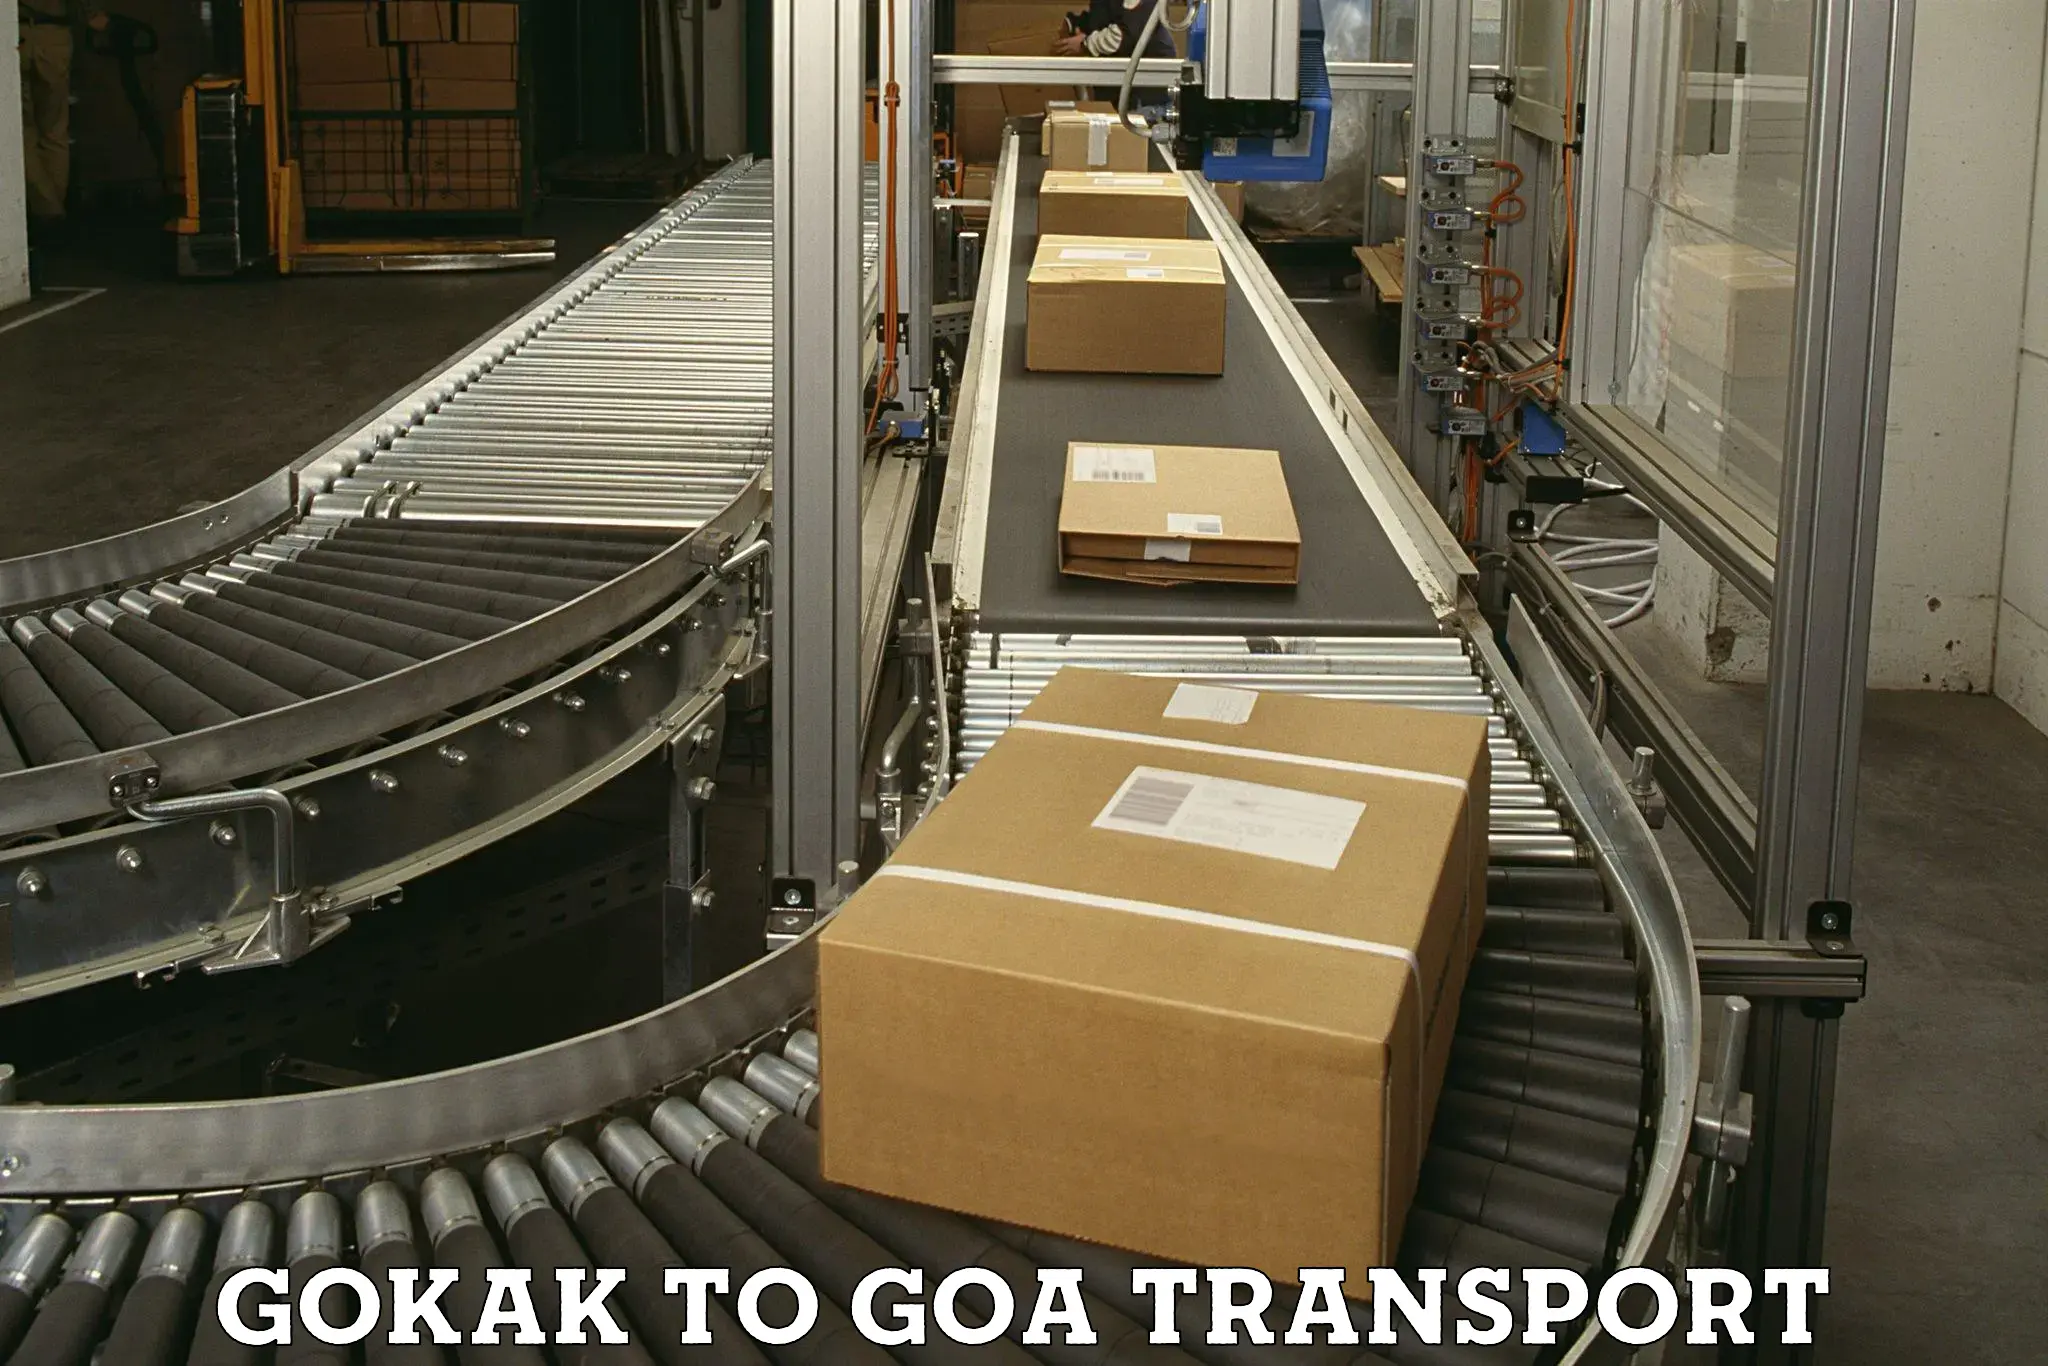 Interstate transport services Gokak to Goa